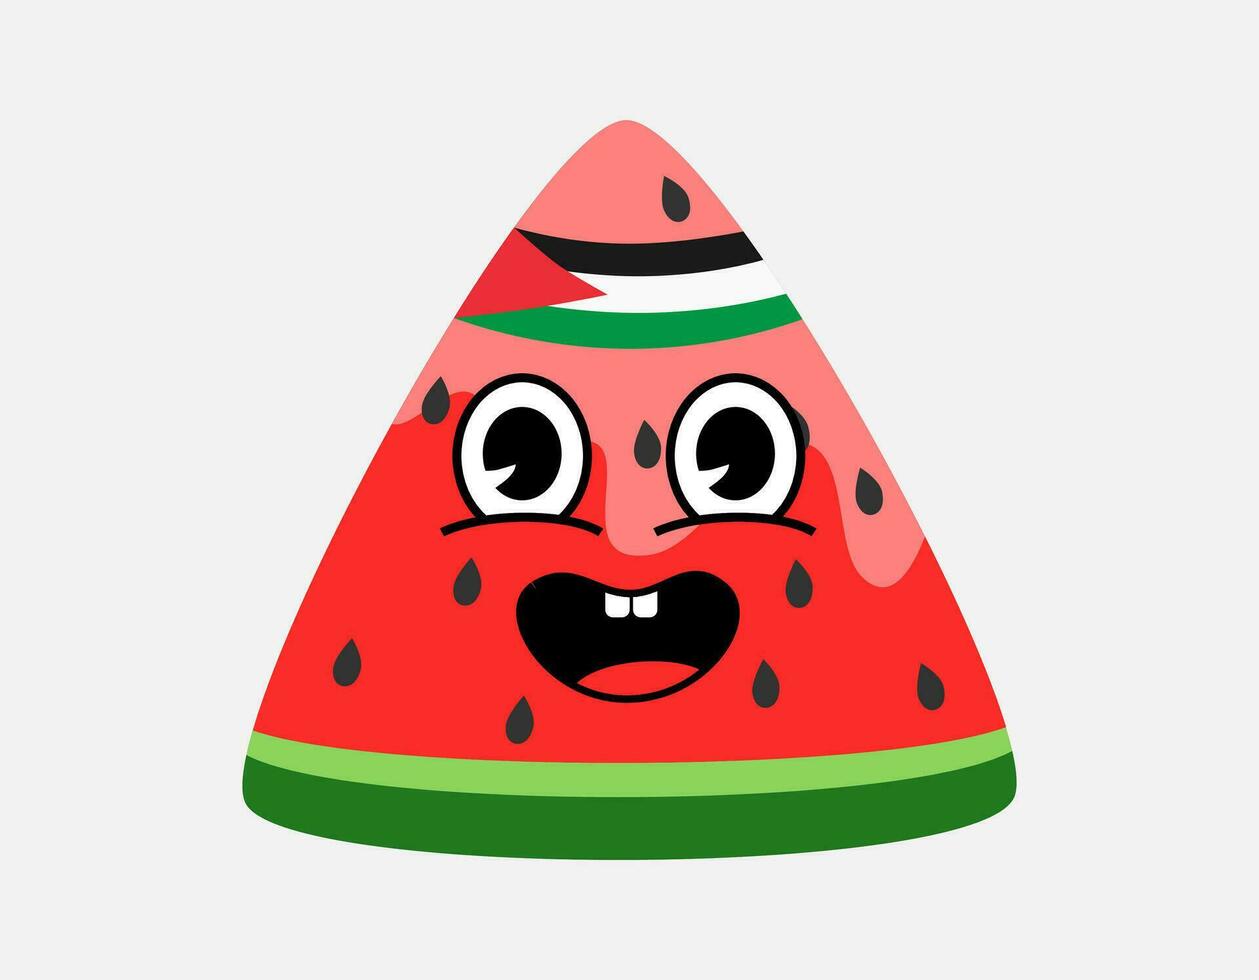 watermeloen gesneden met Palestijn vlag Aan hoofd. illustratie van een watermeloen met zaden en emoticon. vlak vector met groente, rood, roze.